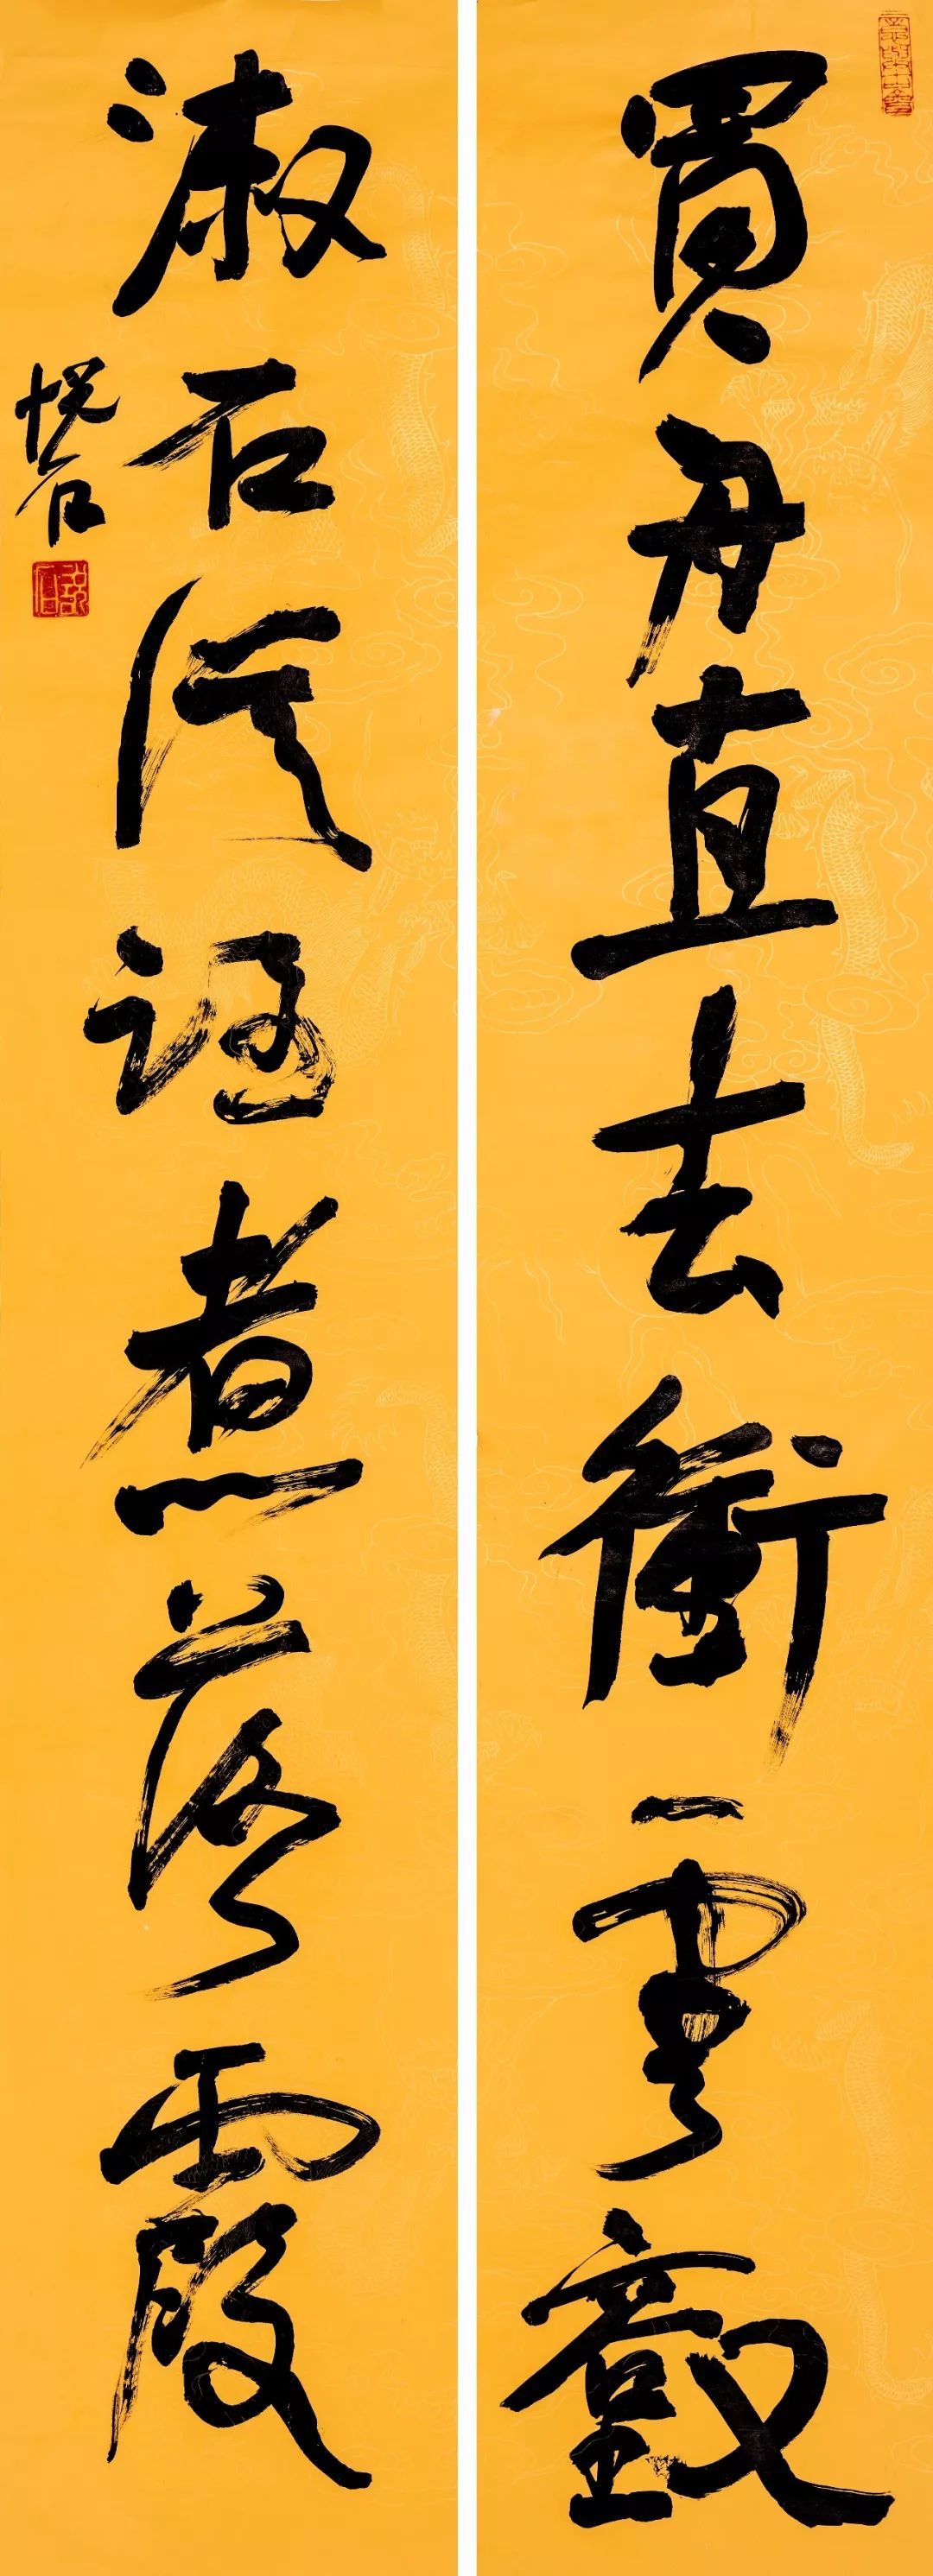 艺视中国|煮字迎春——吴悦石书法作品展在京开幕